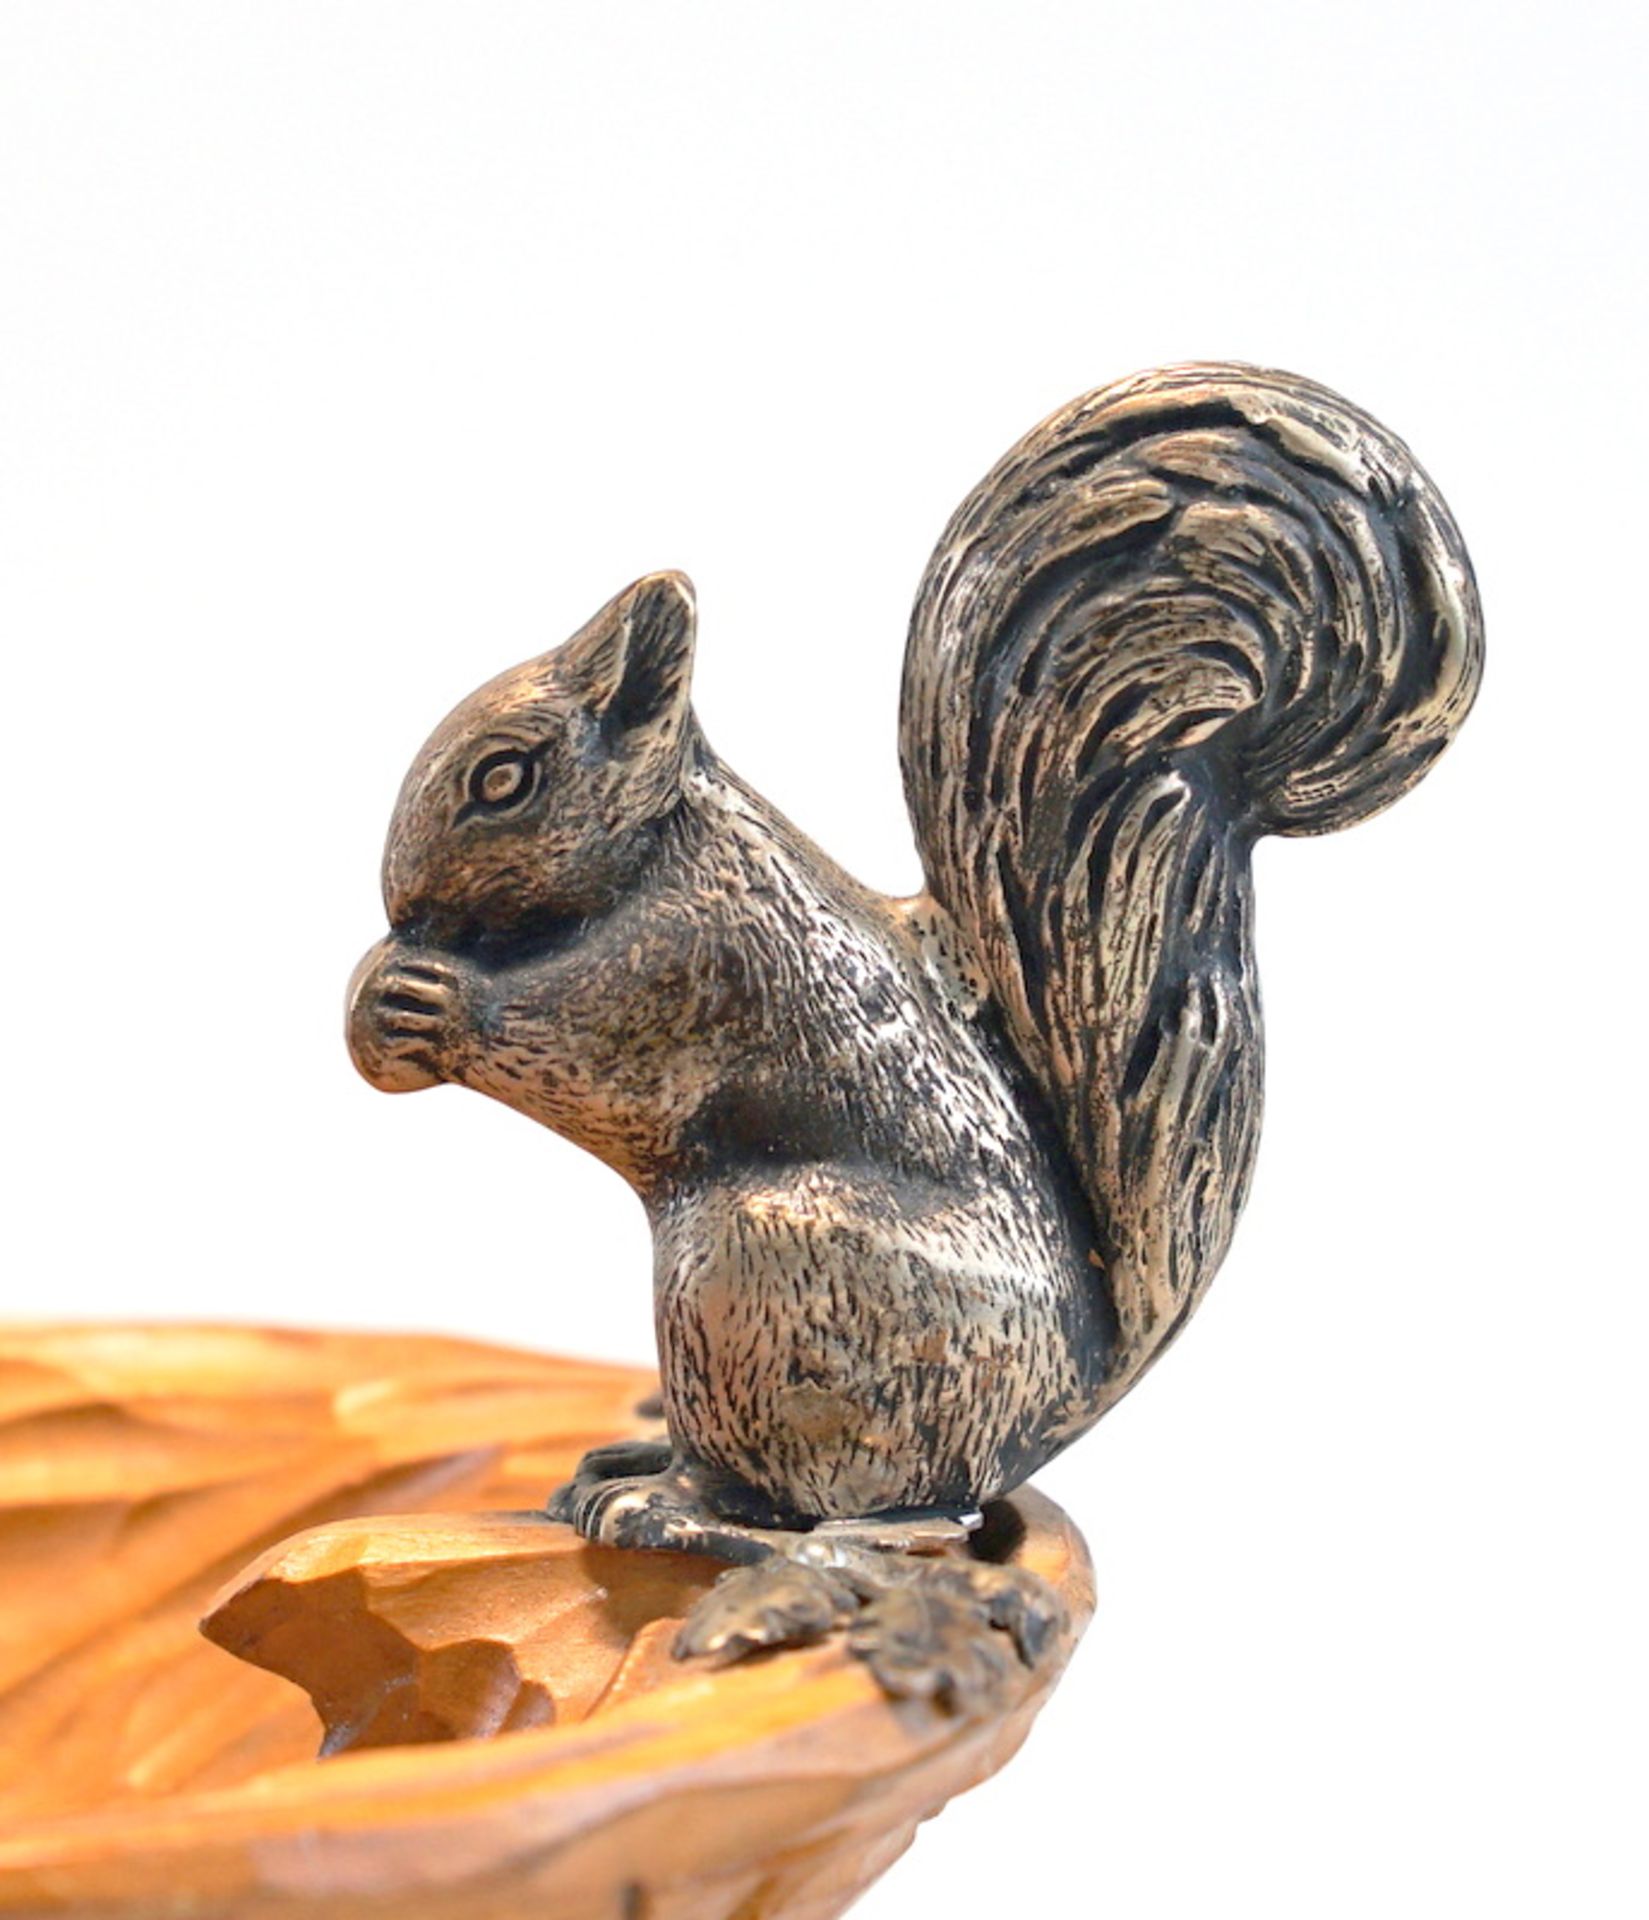 Eichhörnchen auf Nußschale - Image 2 of 3